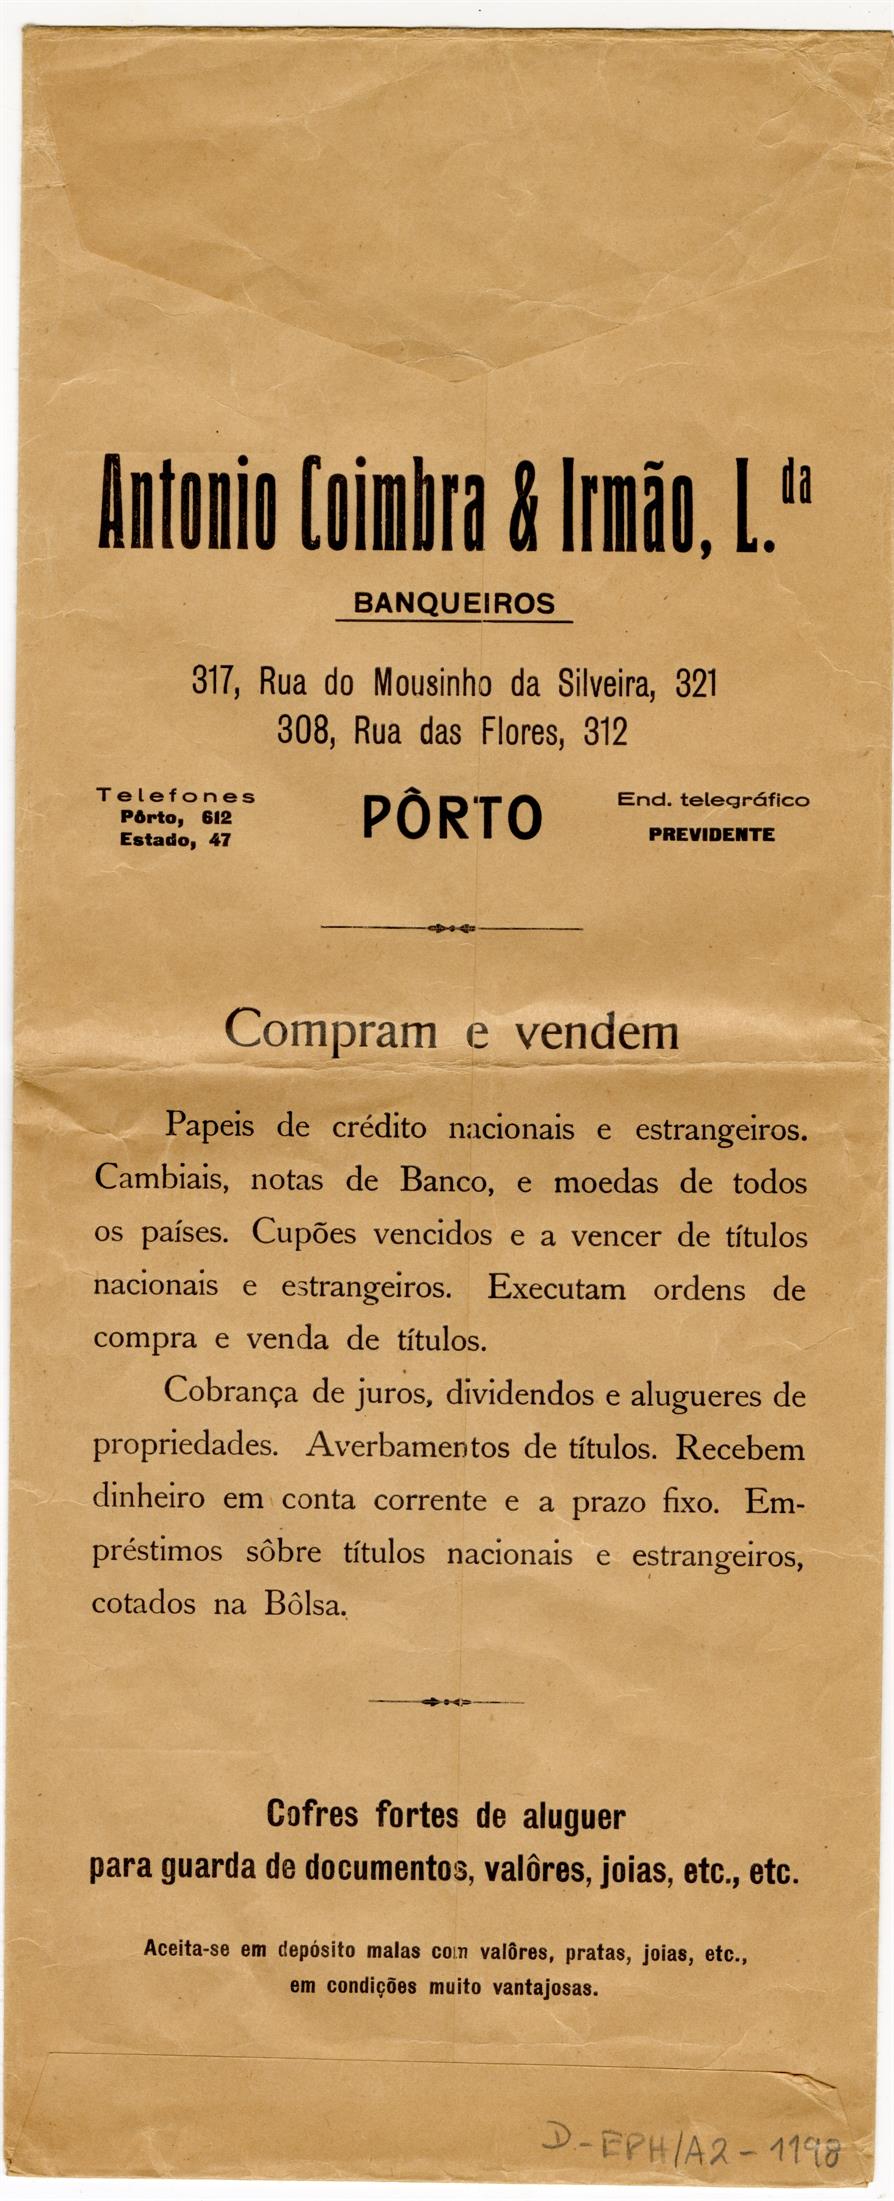 António Coimbra & Irmão, Lda. : banqueiros : compram e vendem cofres fortes de aluguer para guarda de documentos, valores, jóias, etc.